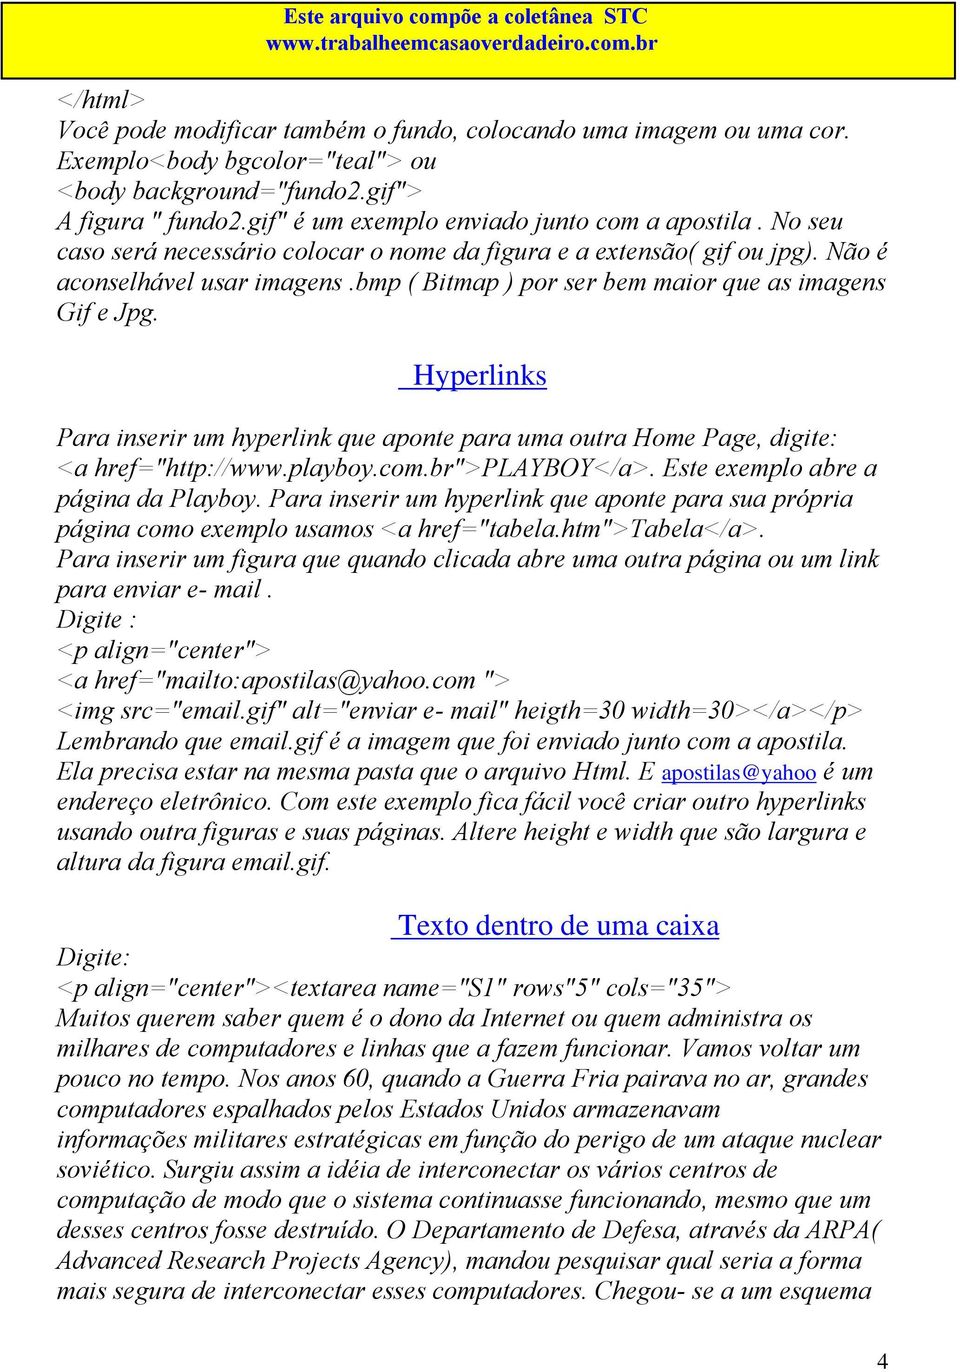 Hyperlinks Para inserir um hyperlink que aponte para uma outra Home Page, digite: <a href="http://www.playboy.com.br">playboy</a>. Este exemplo abre a página da Playboy.